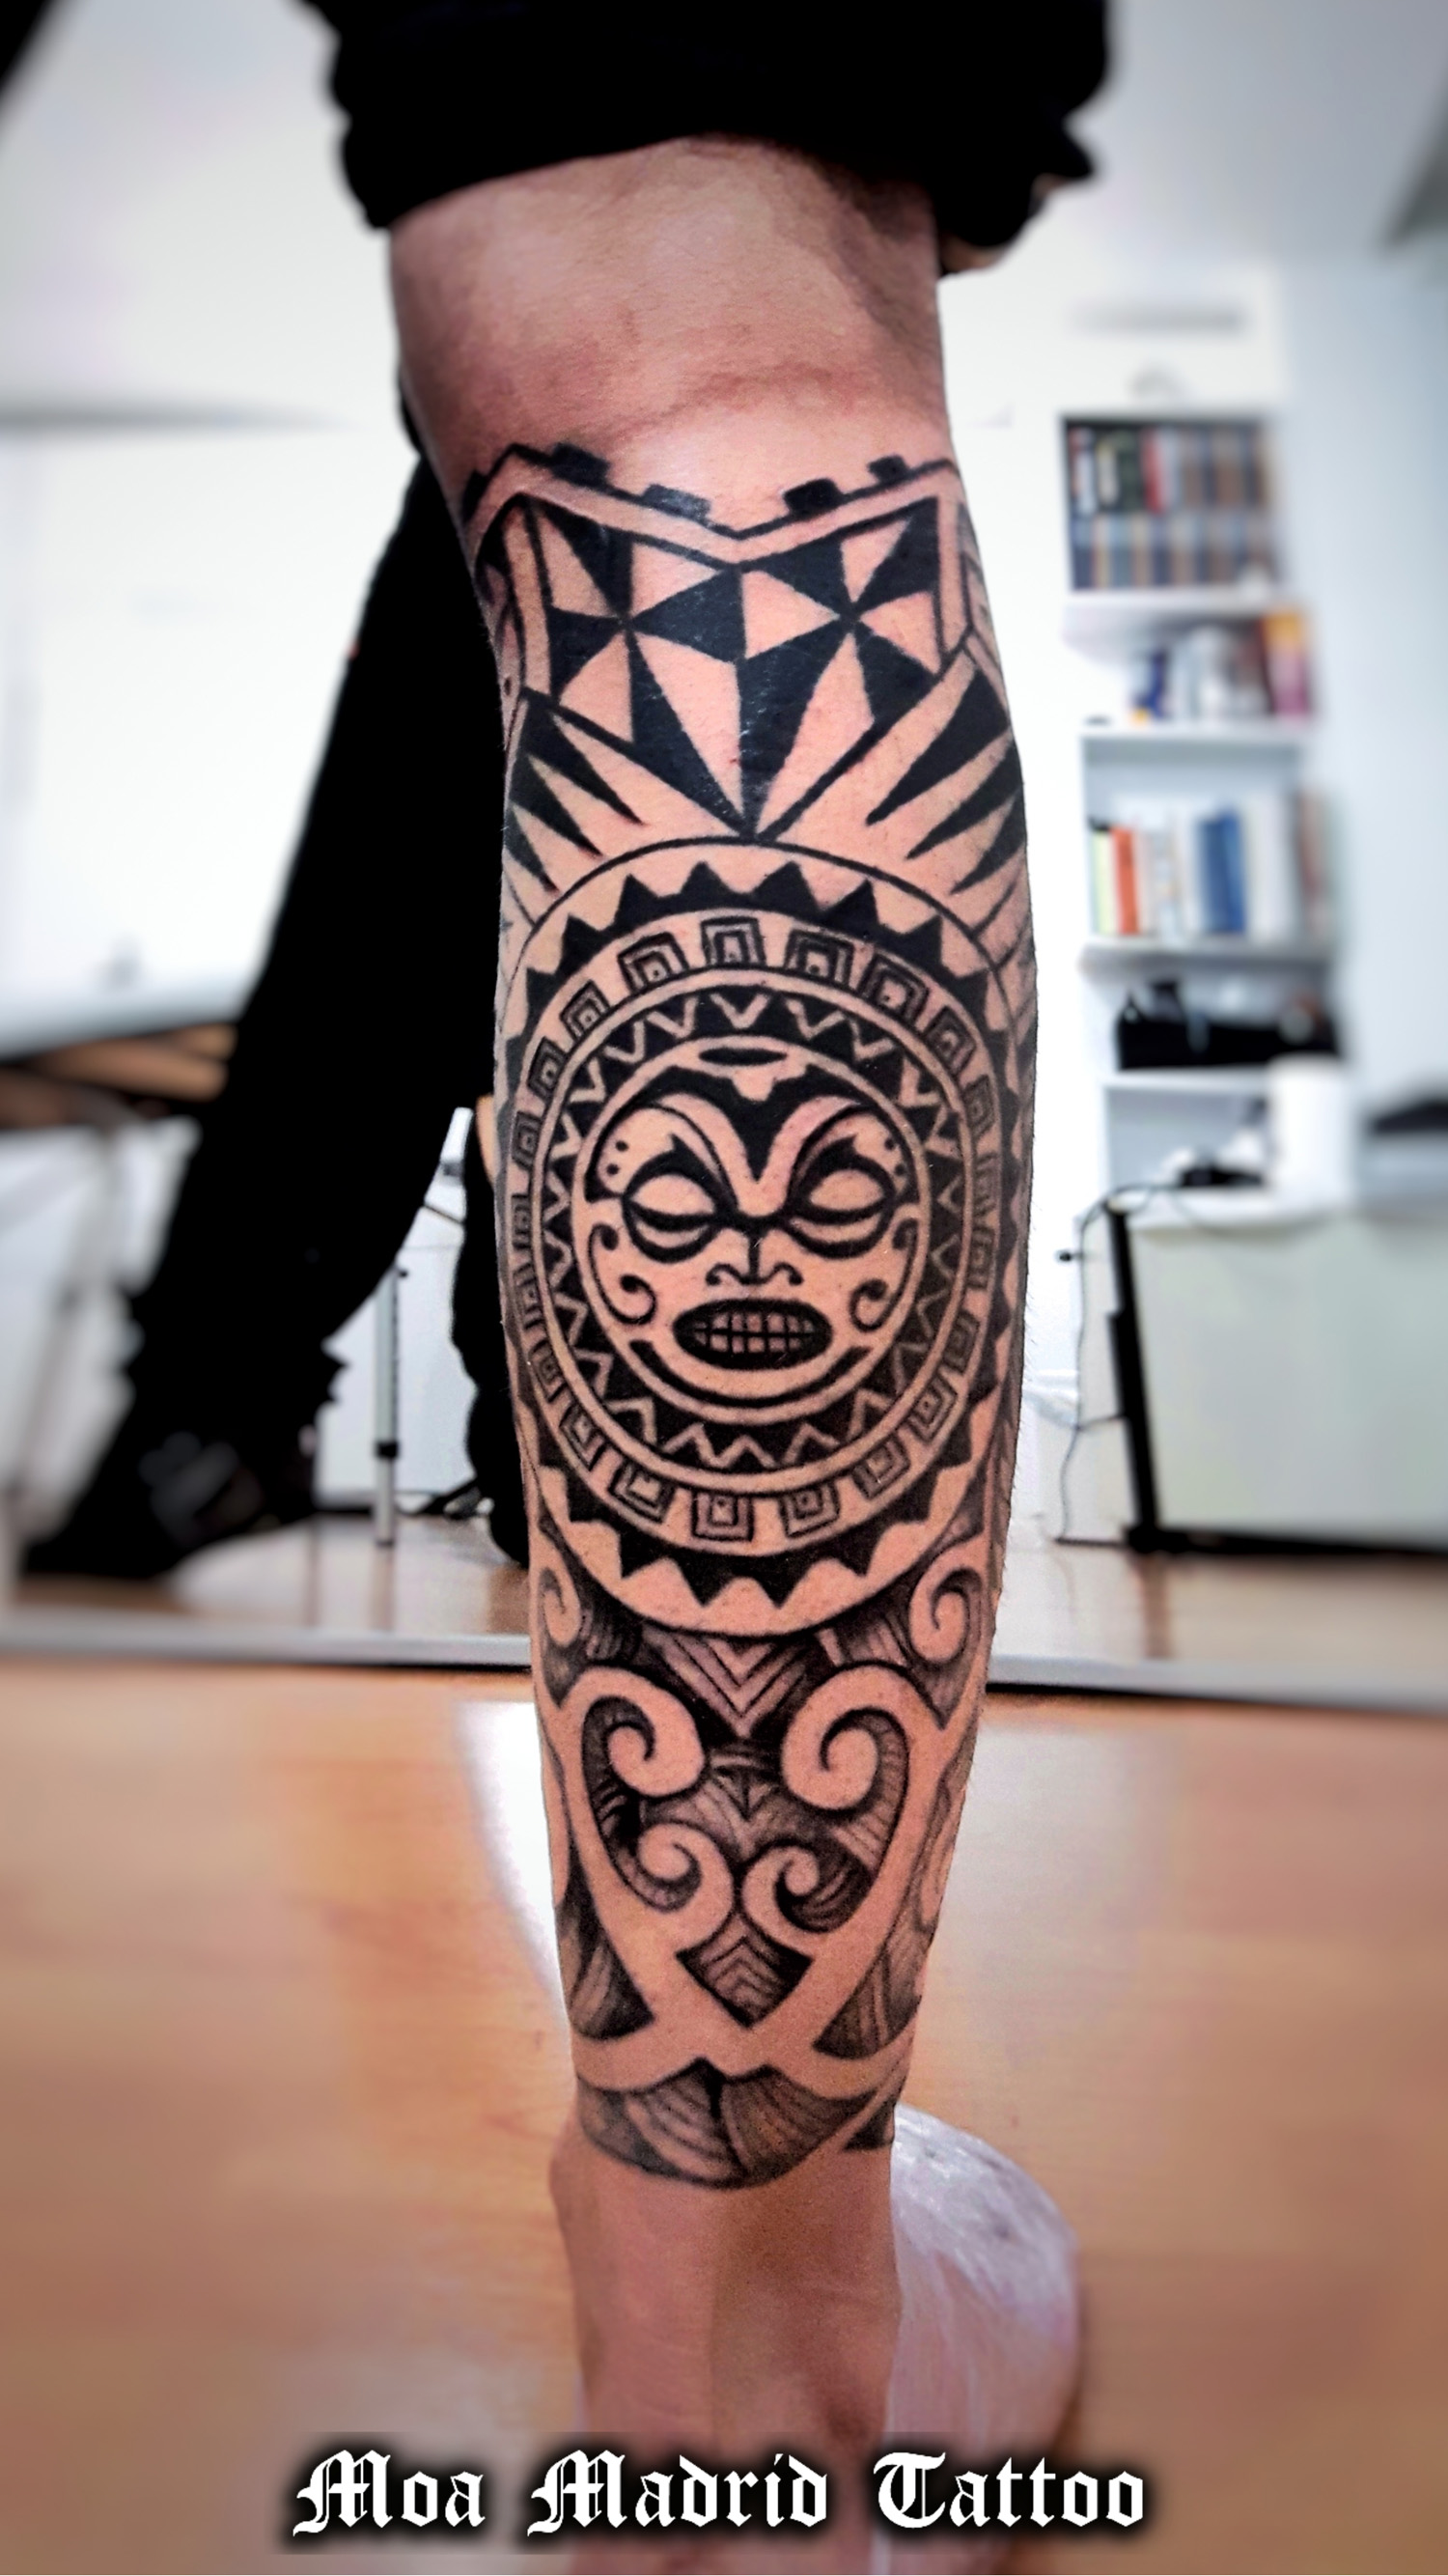 Tatuaje maorí en la pierna con sol, símbolo de fuerza